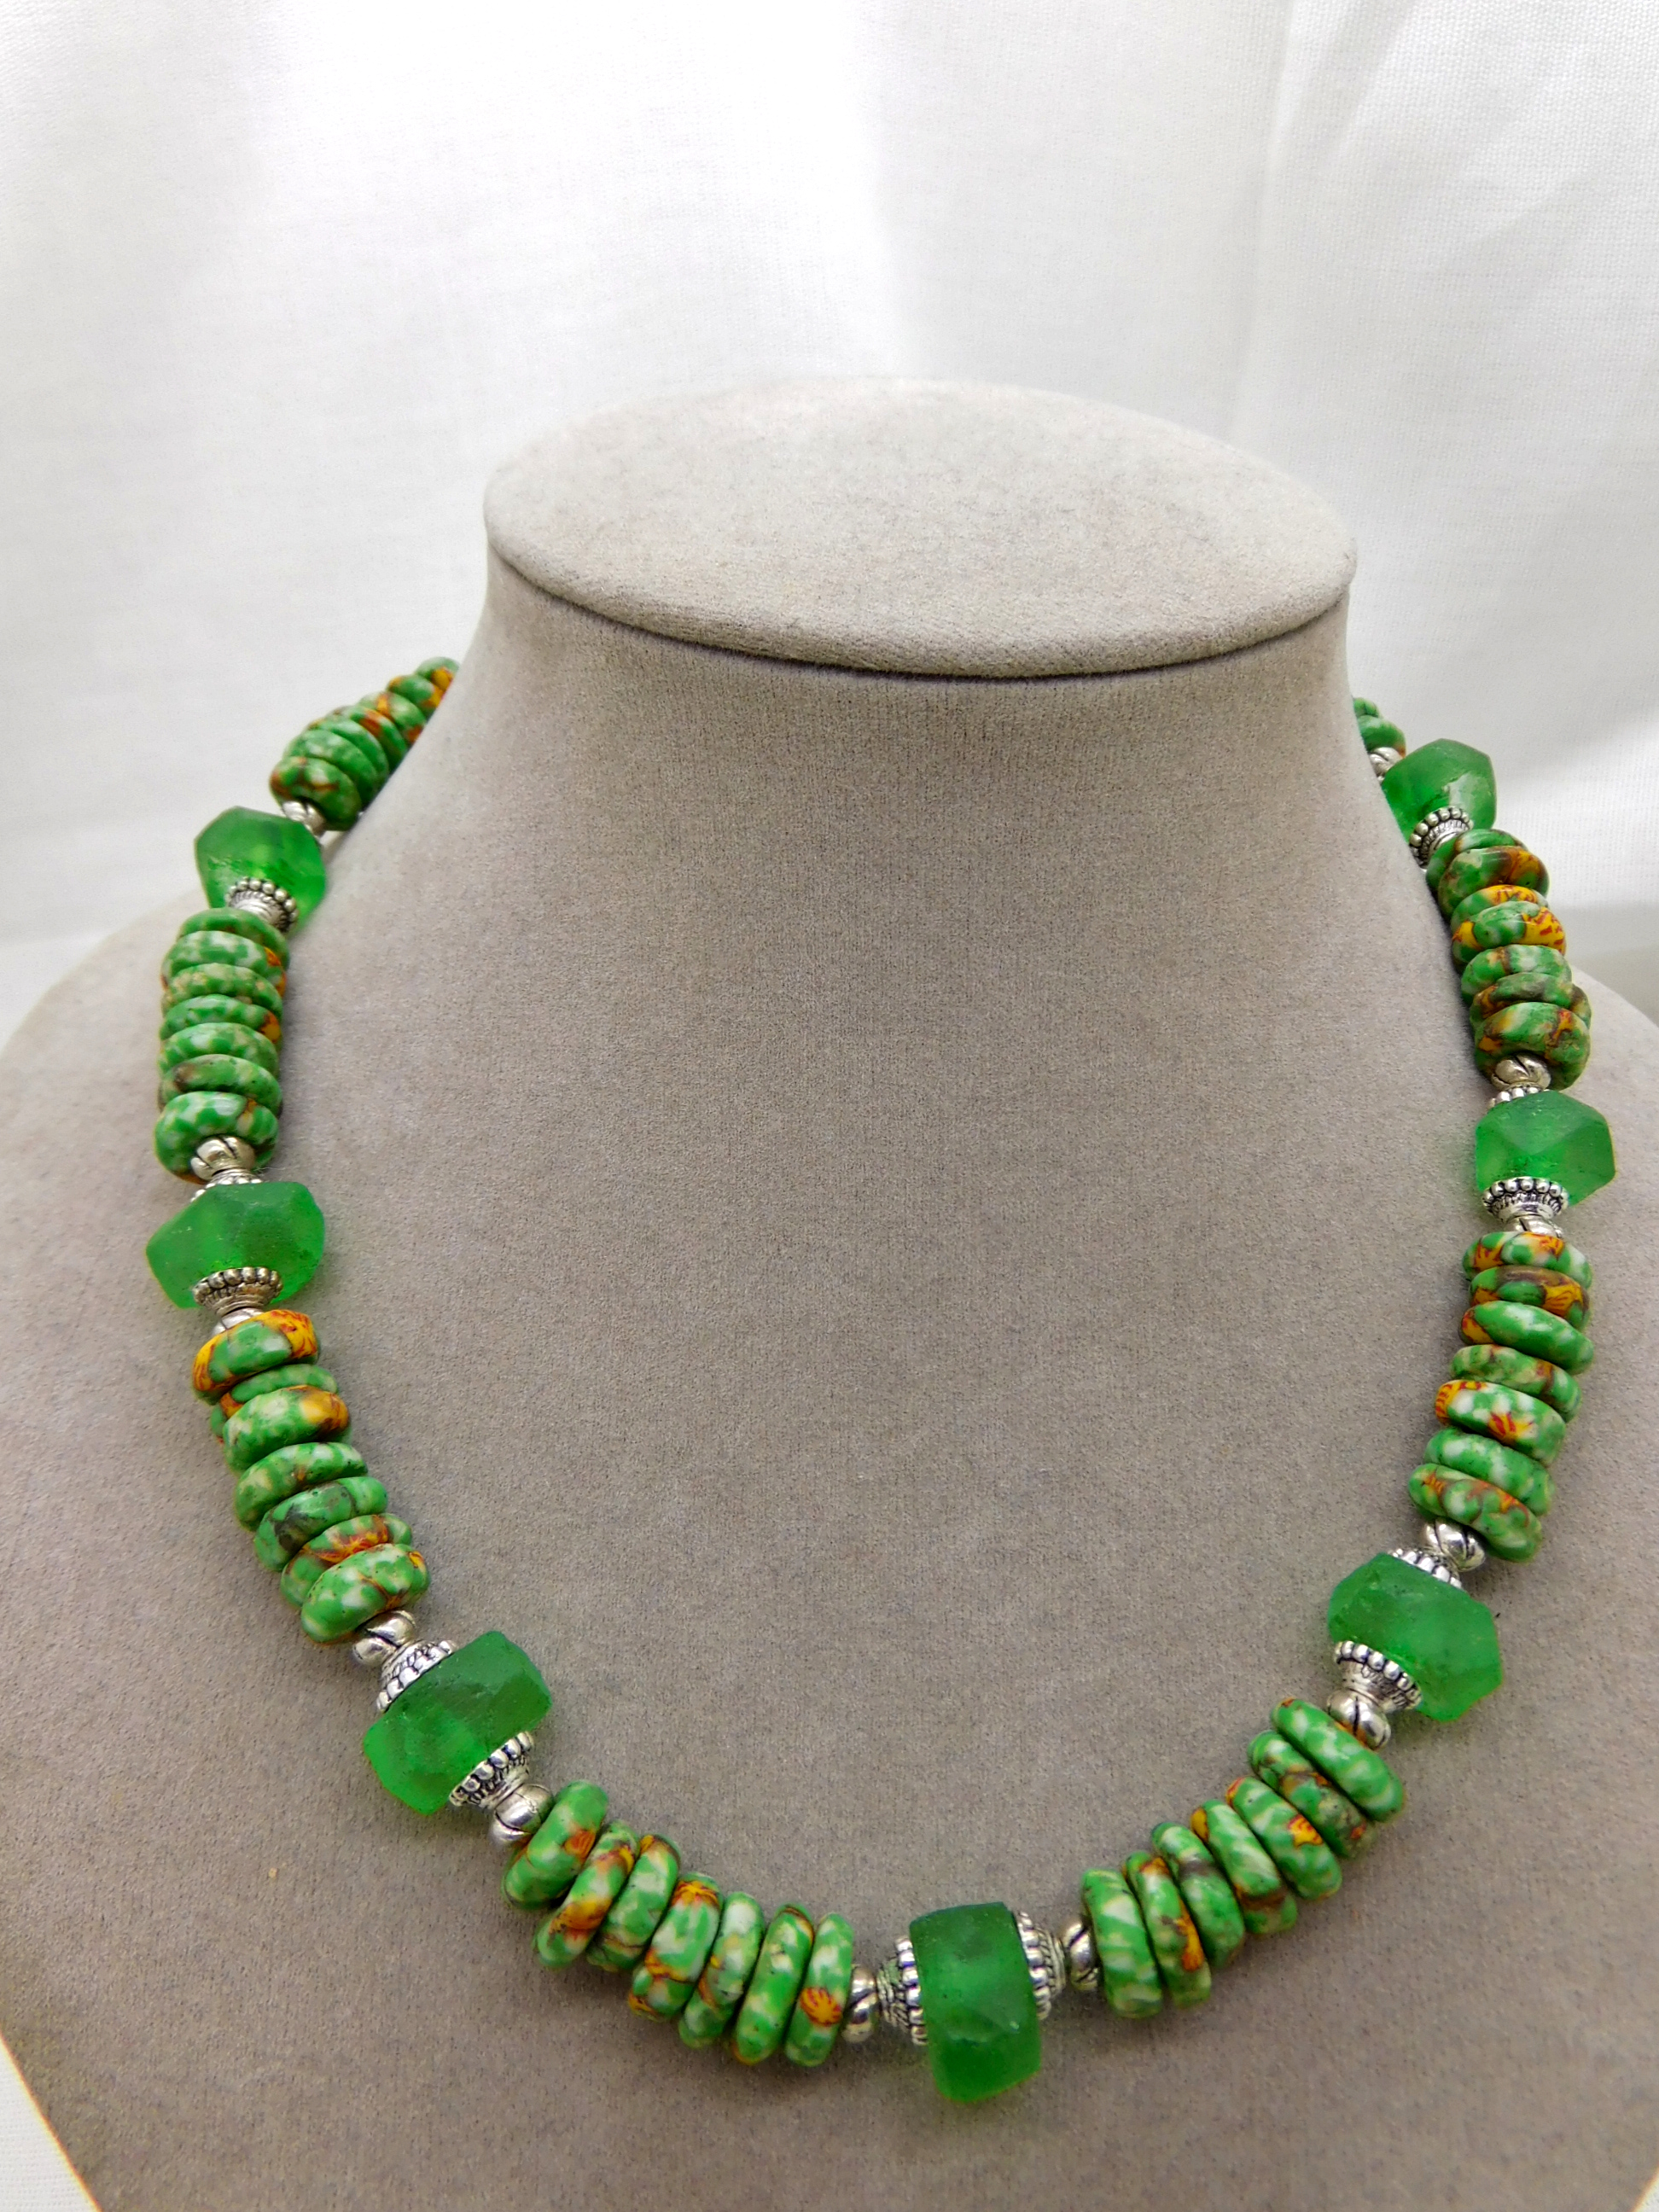 Halskette - afrikanische Krobo-Glas-Rondelle - grün, gelb, silber